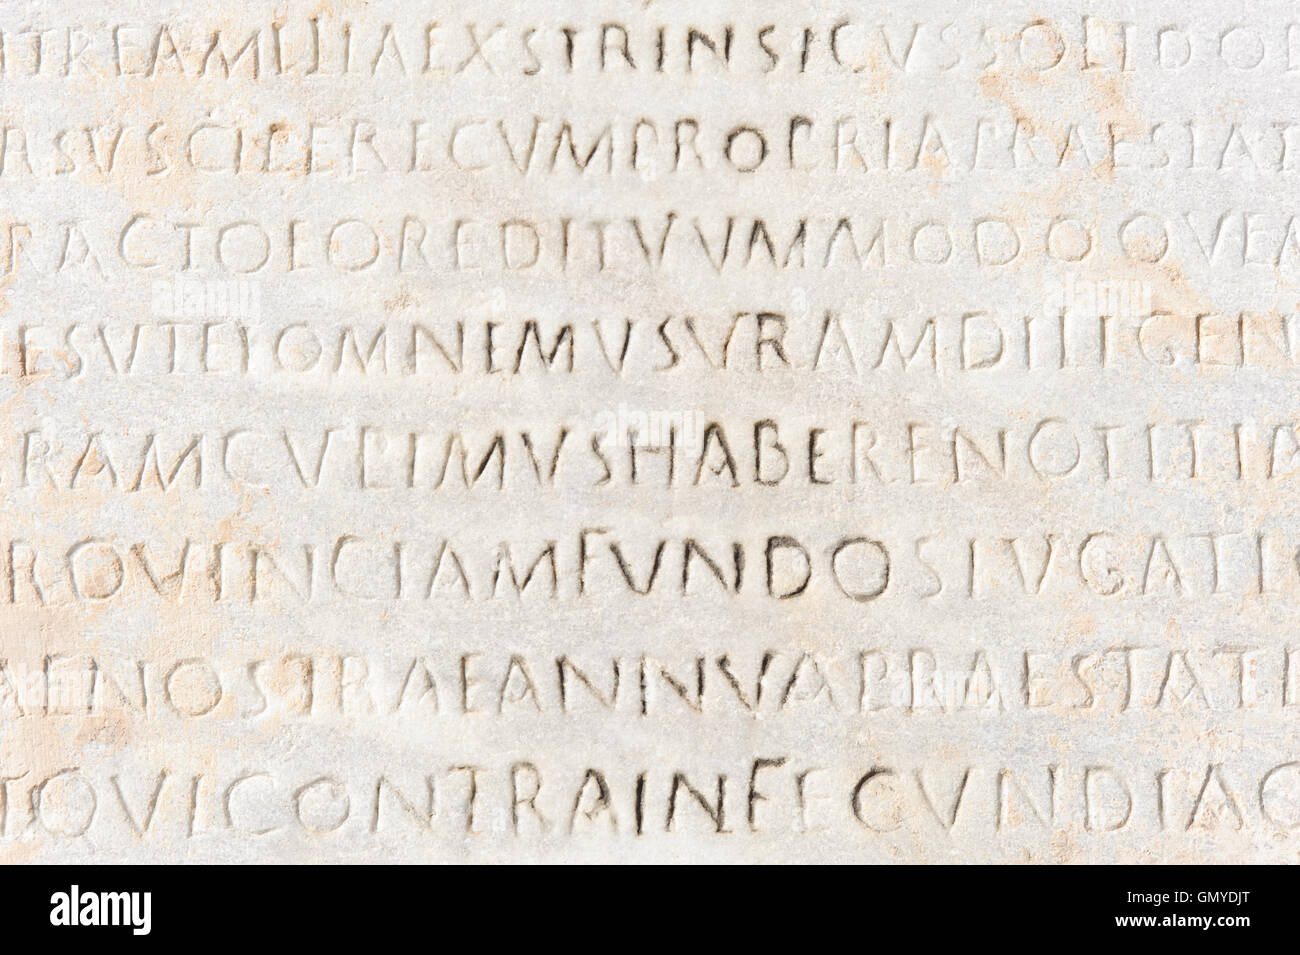 closeup of ancient latin text Stock Photo